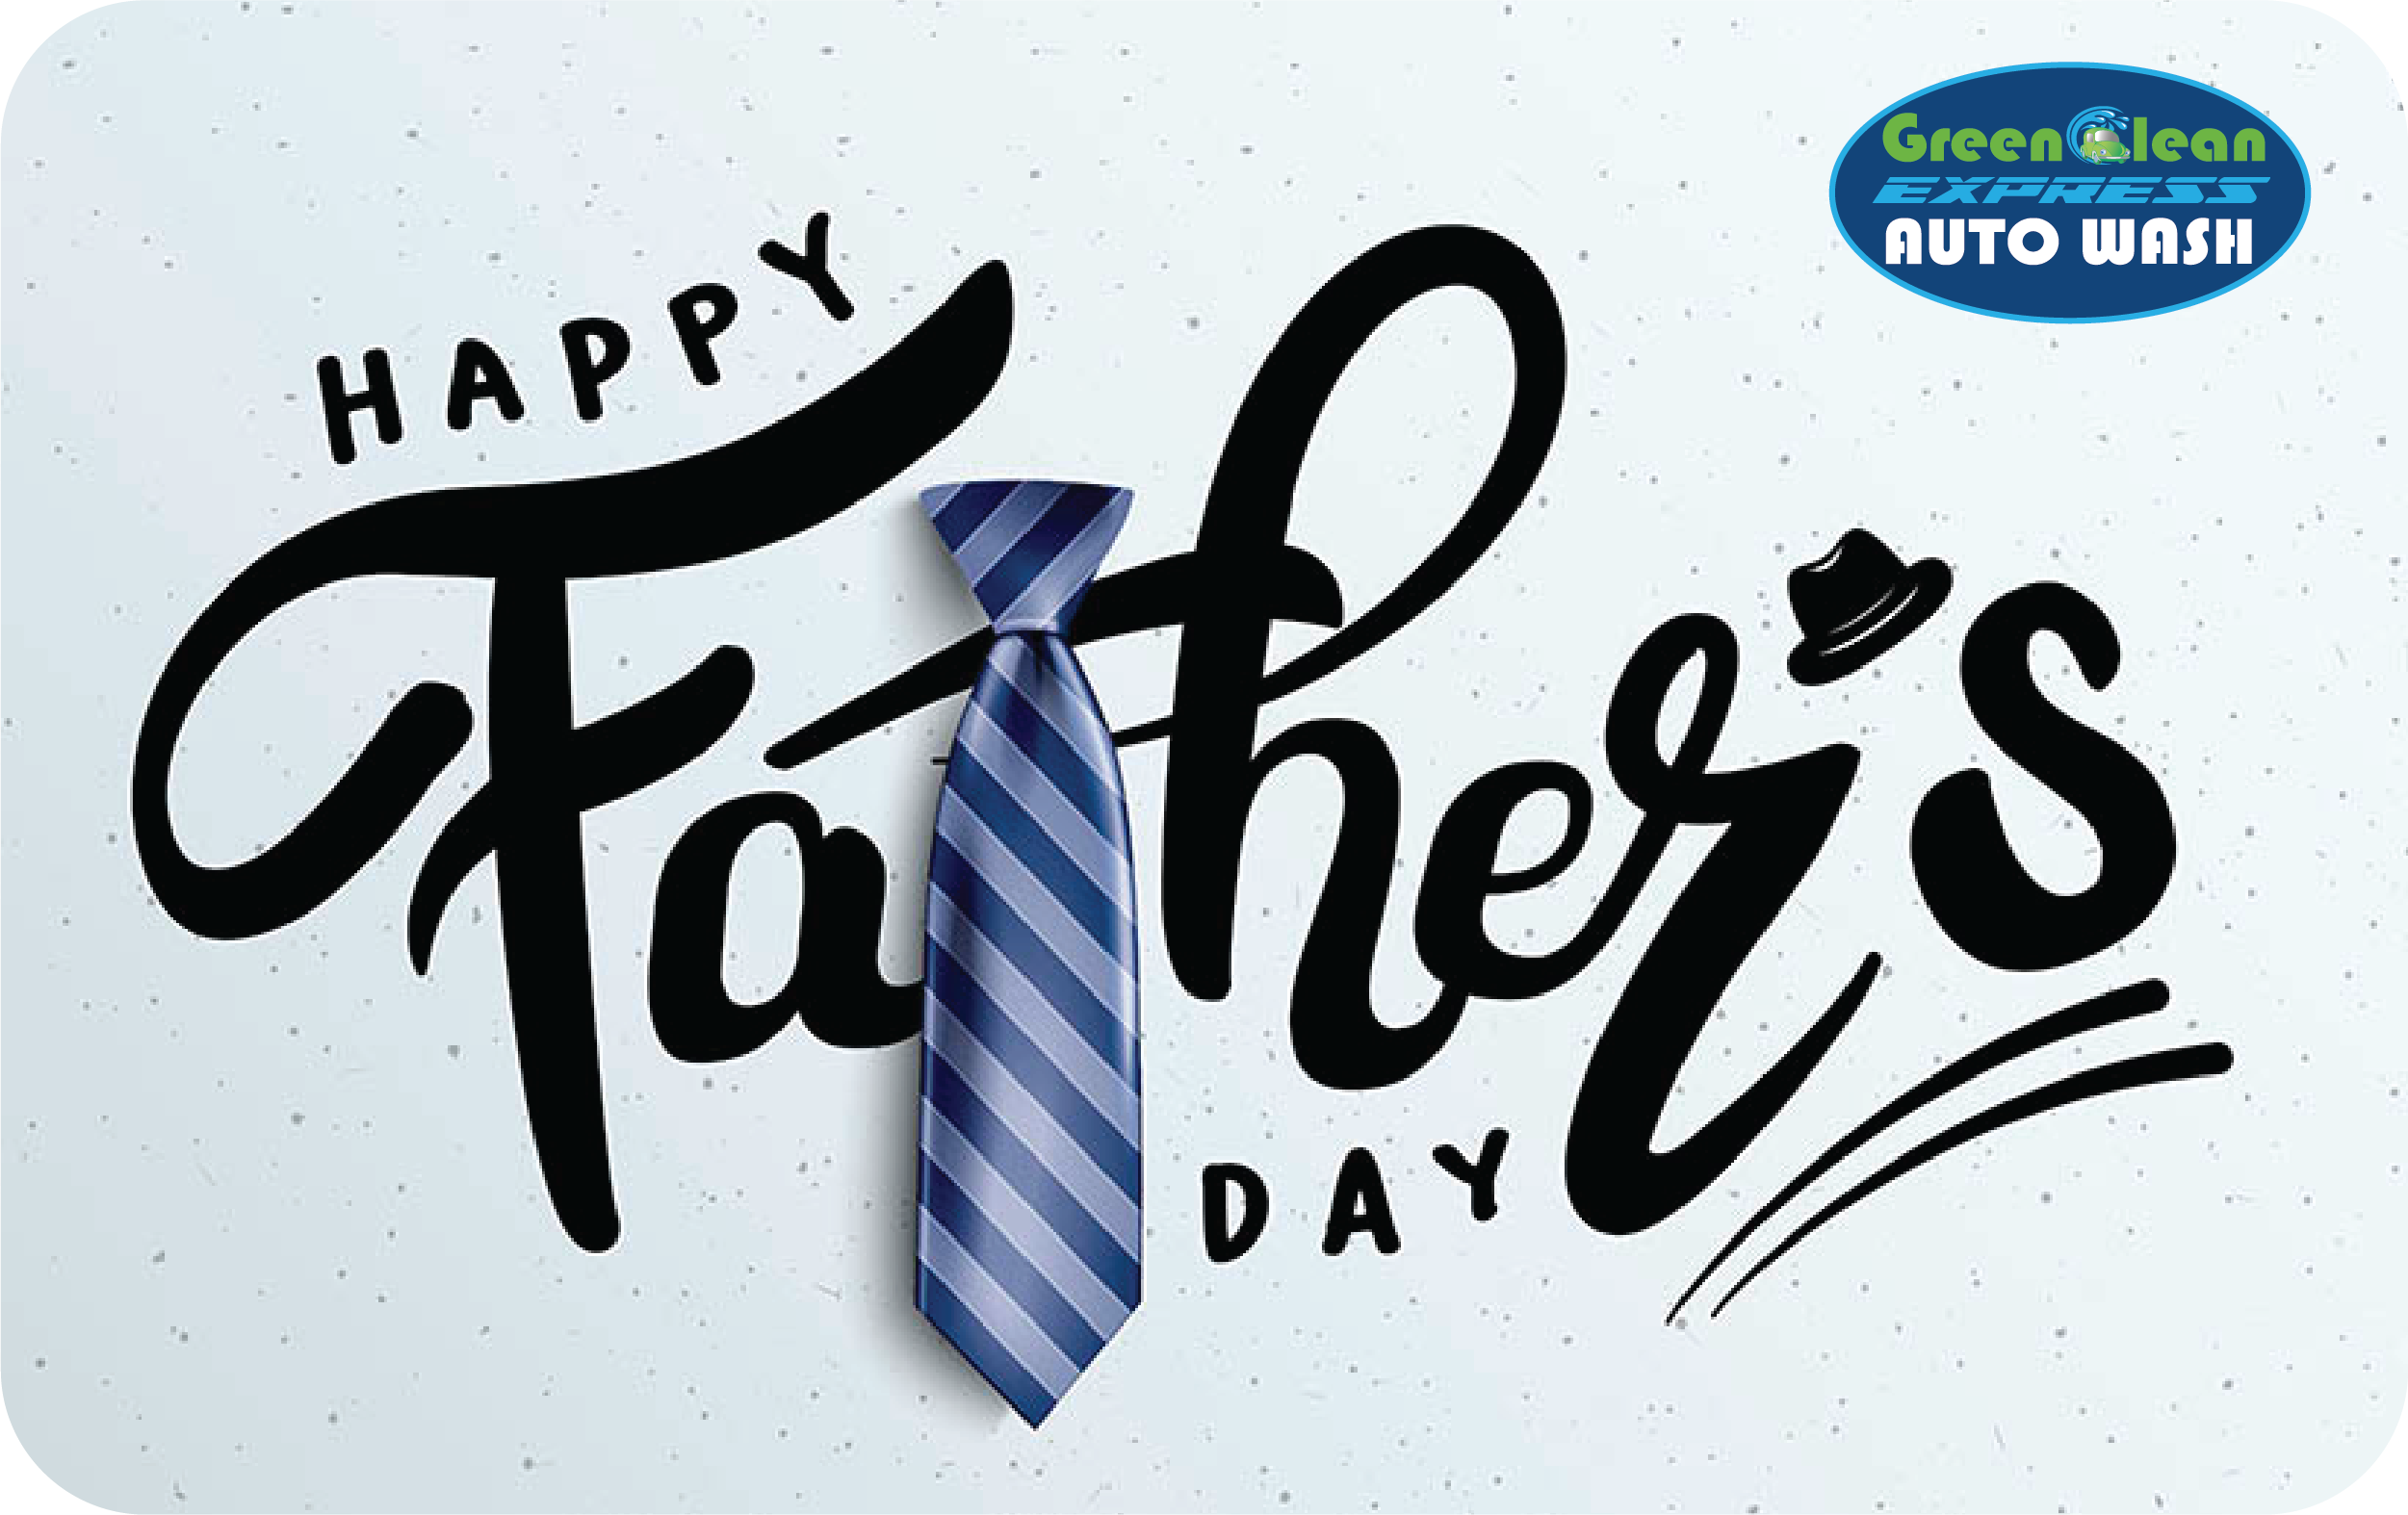 gcaw-fathers-day-tie